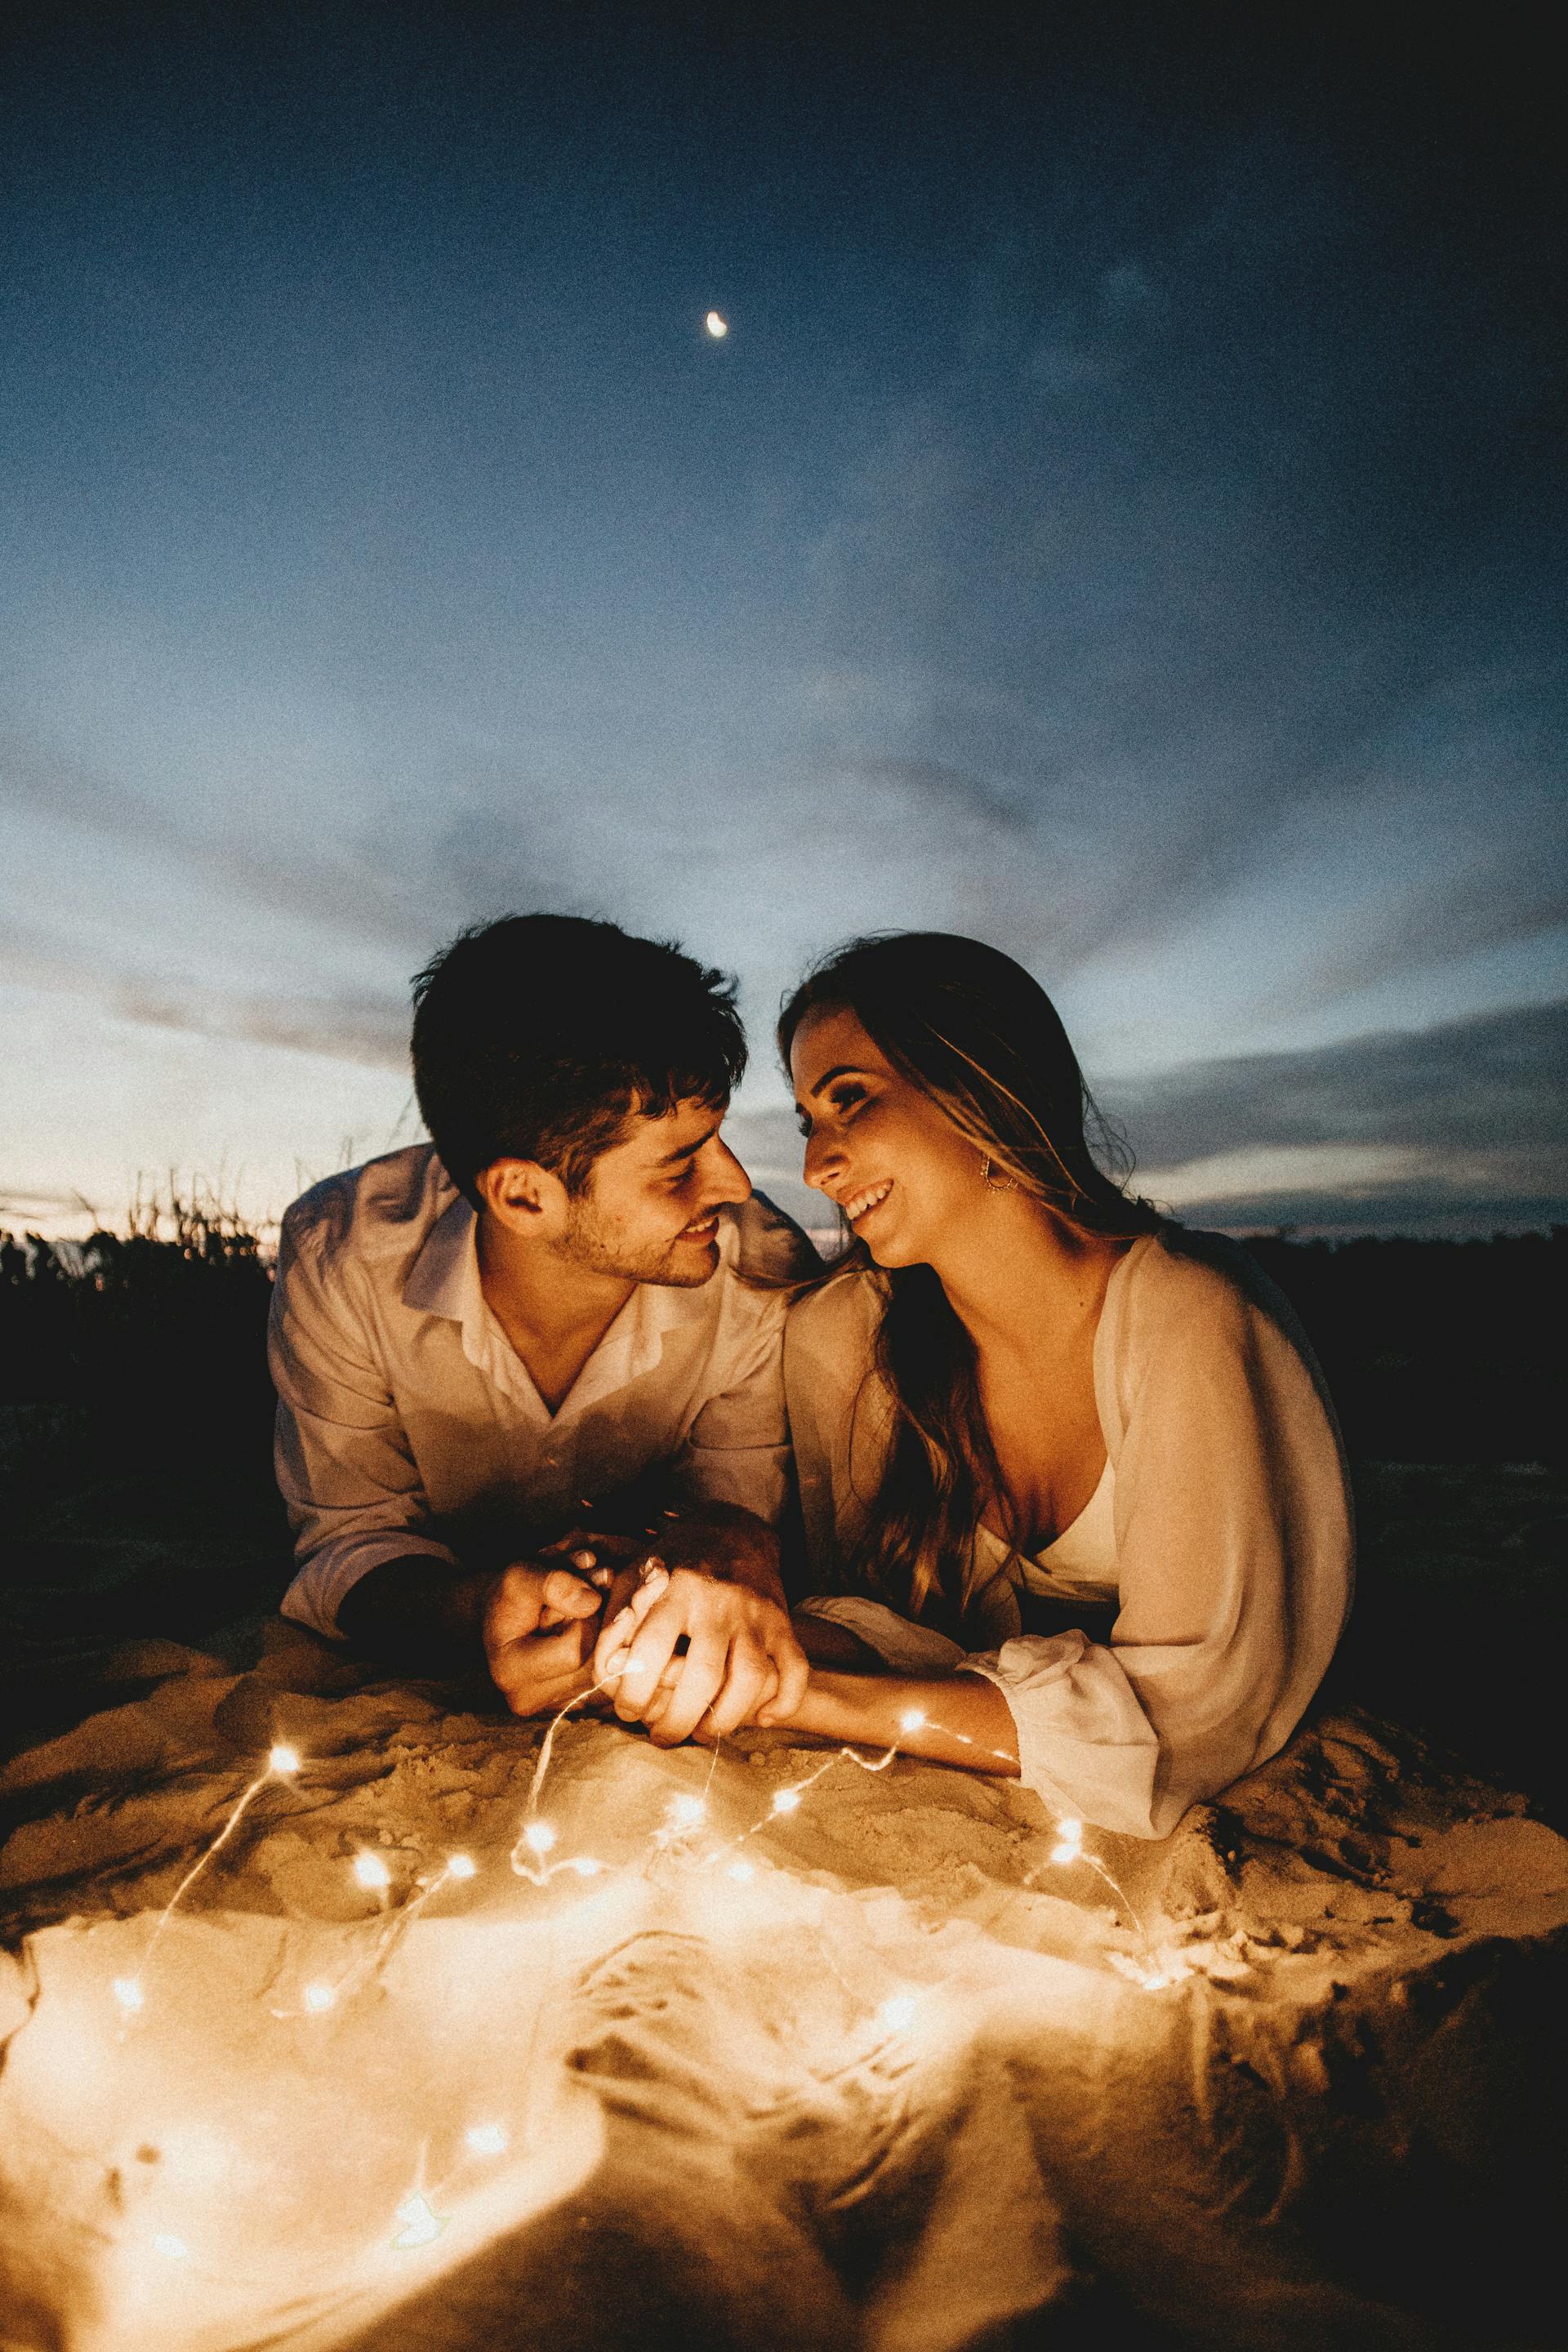 Ein liebendes Paar hält abends Händchen | Quelle: Pexels